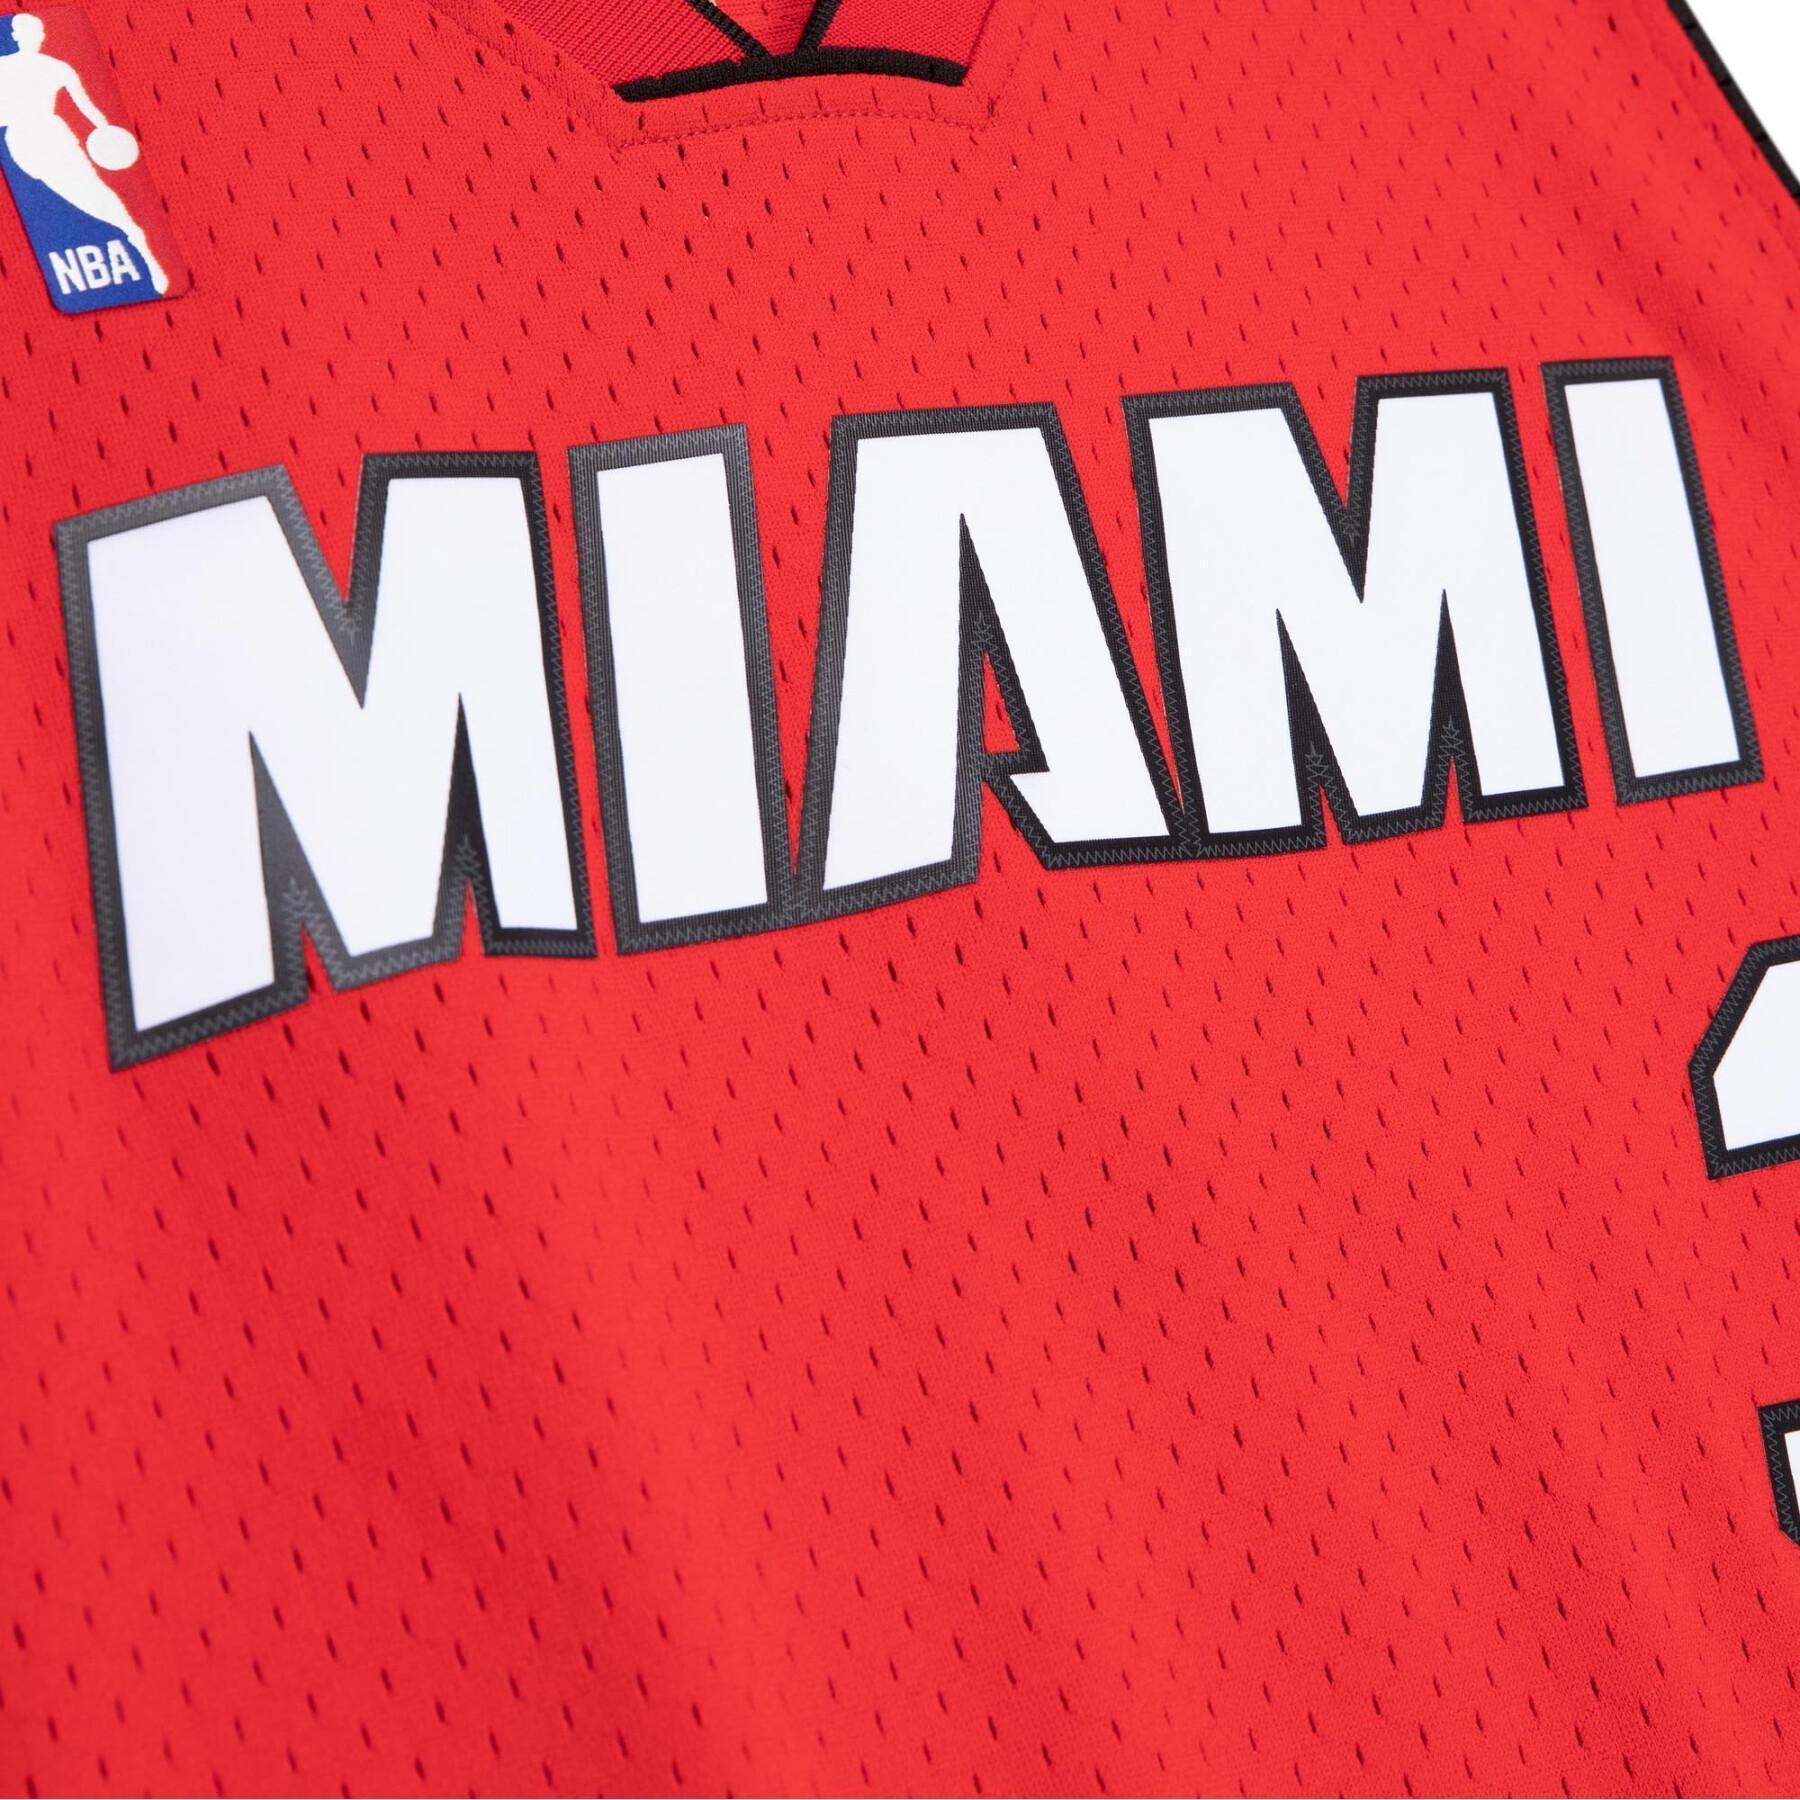 Alternatywna koszulka Miami Heat